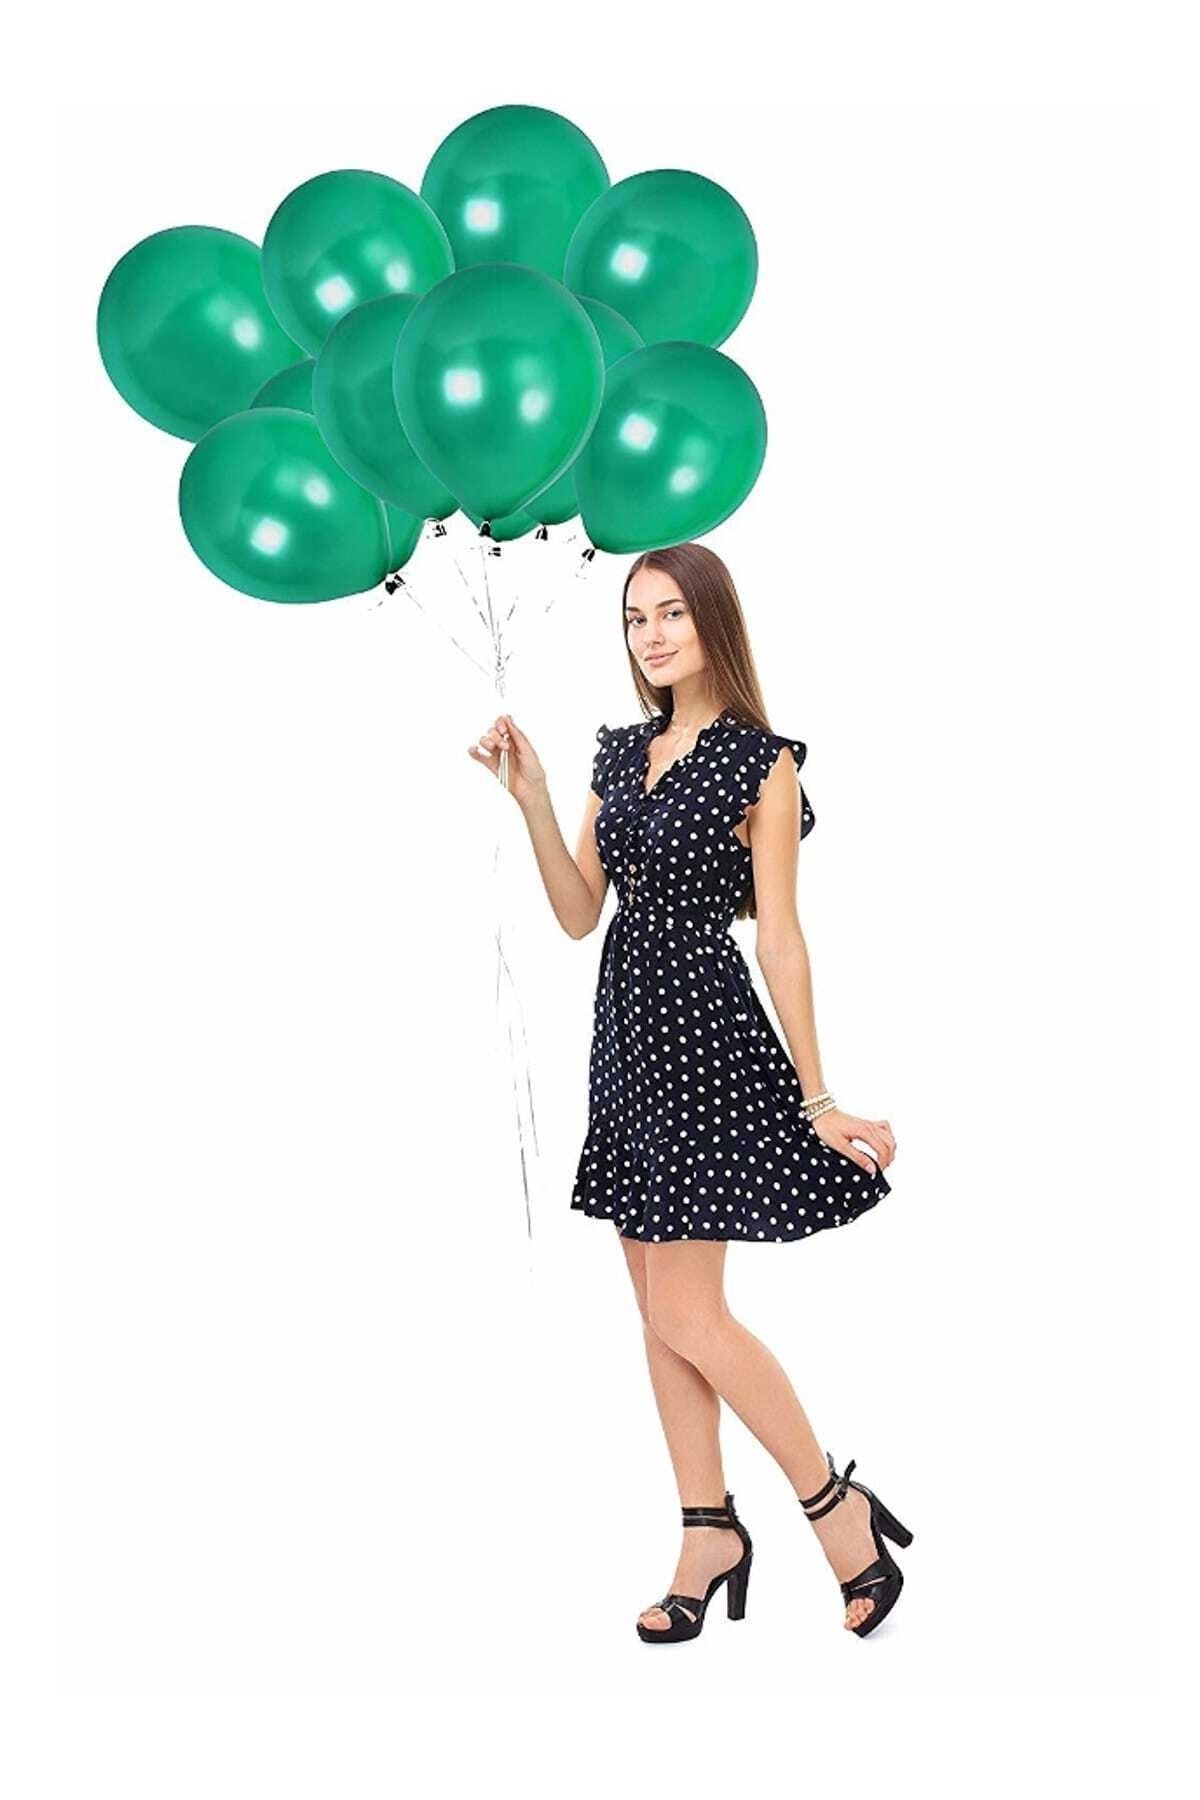 Magic Hobby Yeşil Renk Metalik Balon 50 Adet ( 50'li Paket)